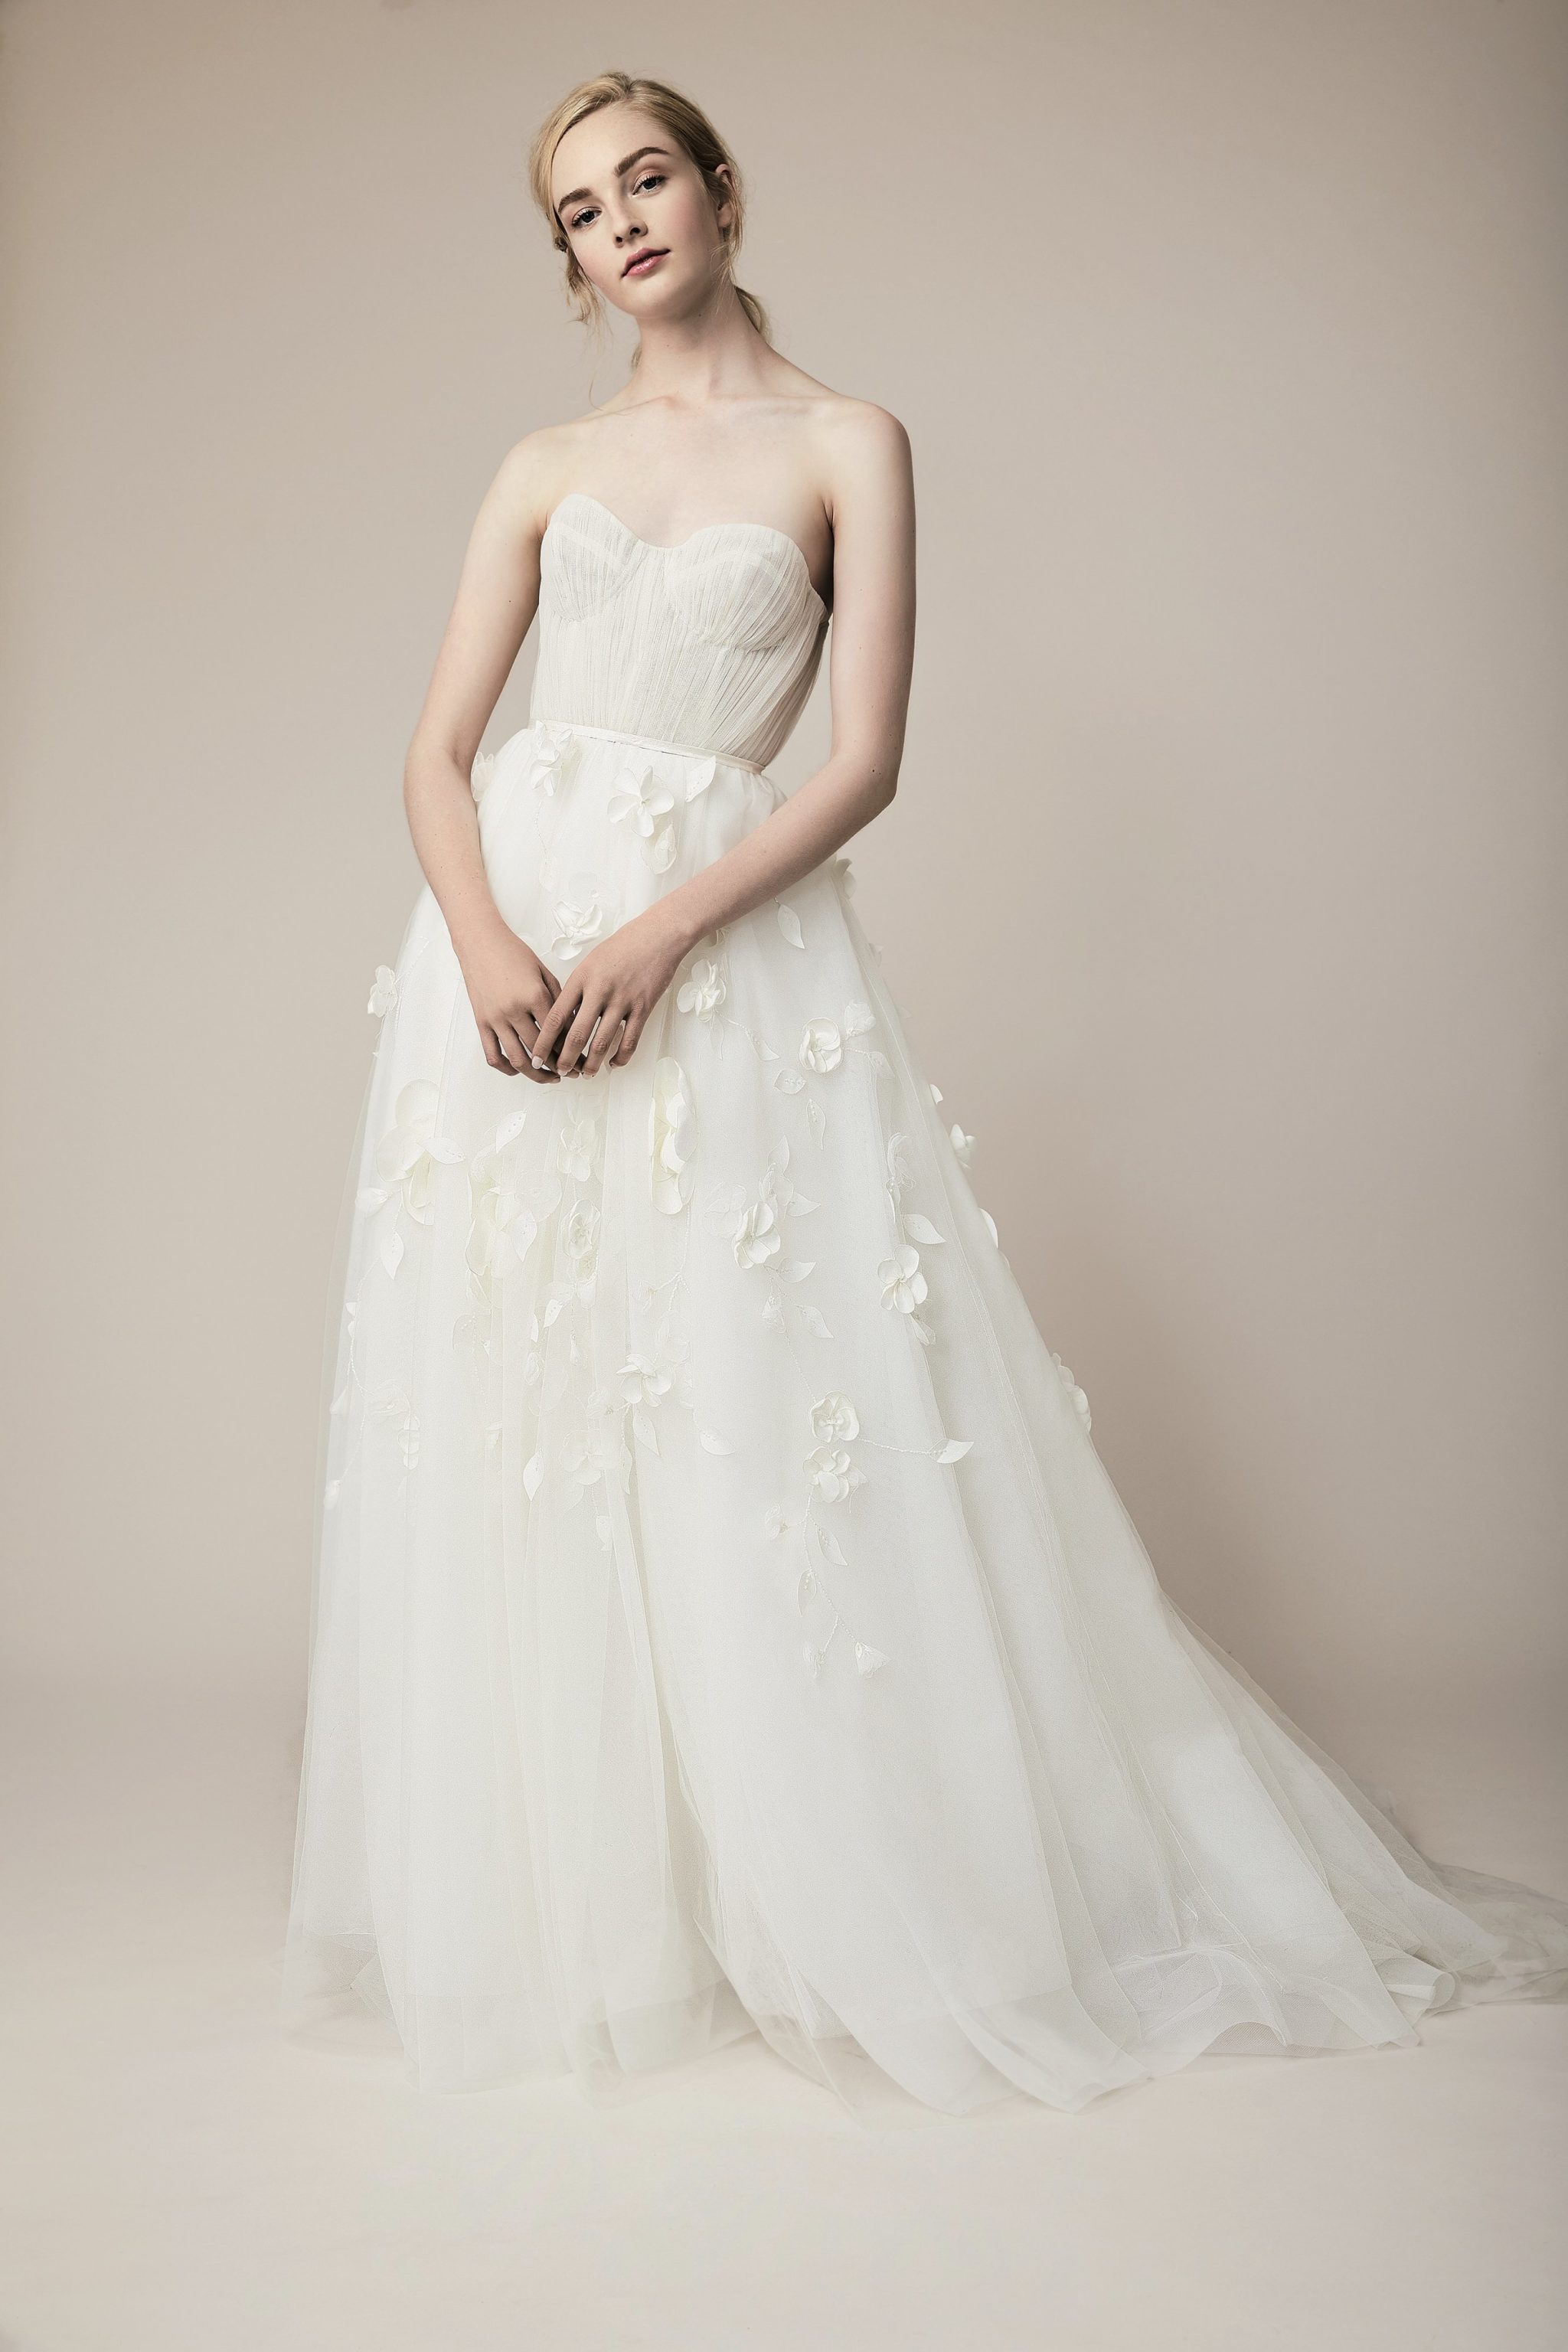 New Bridesmaid Dress Trends 2019 Cap Sleeve Dresses | DaVinci Bridal